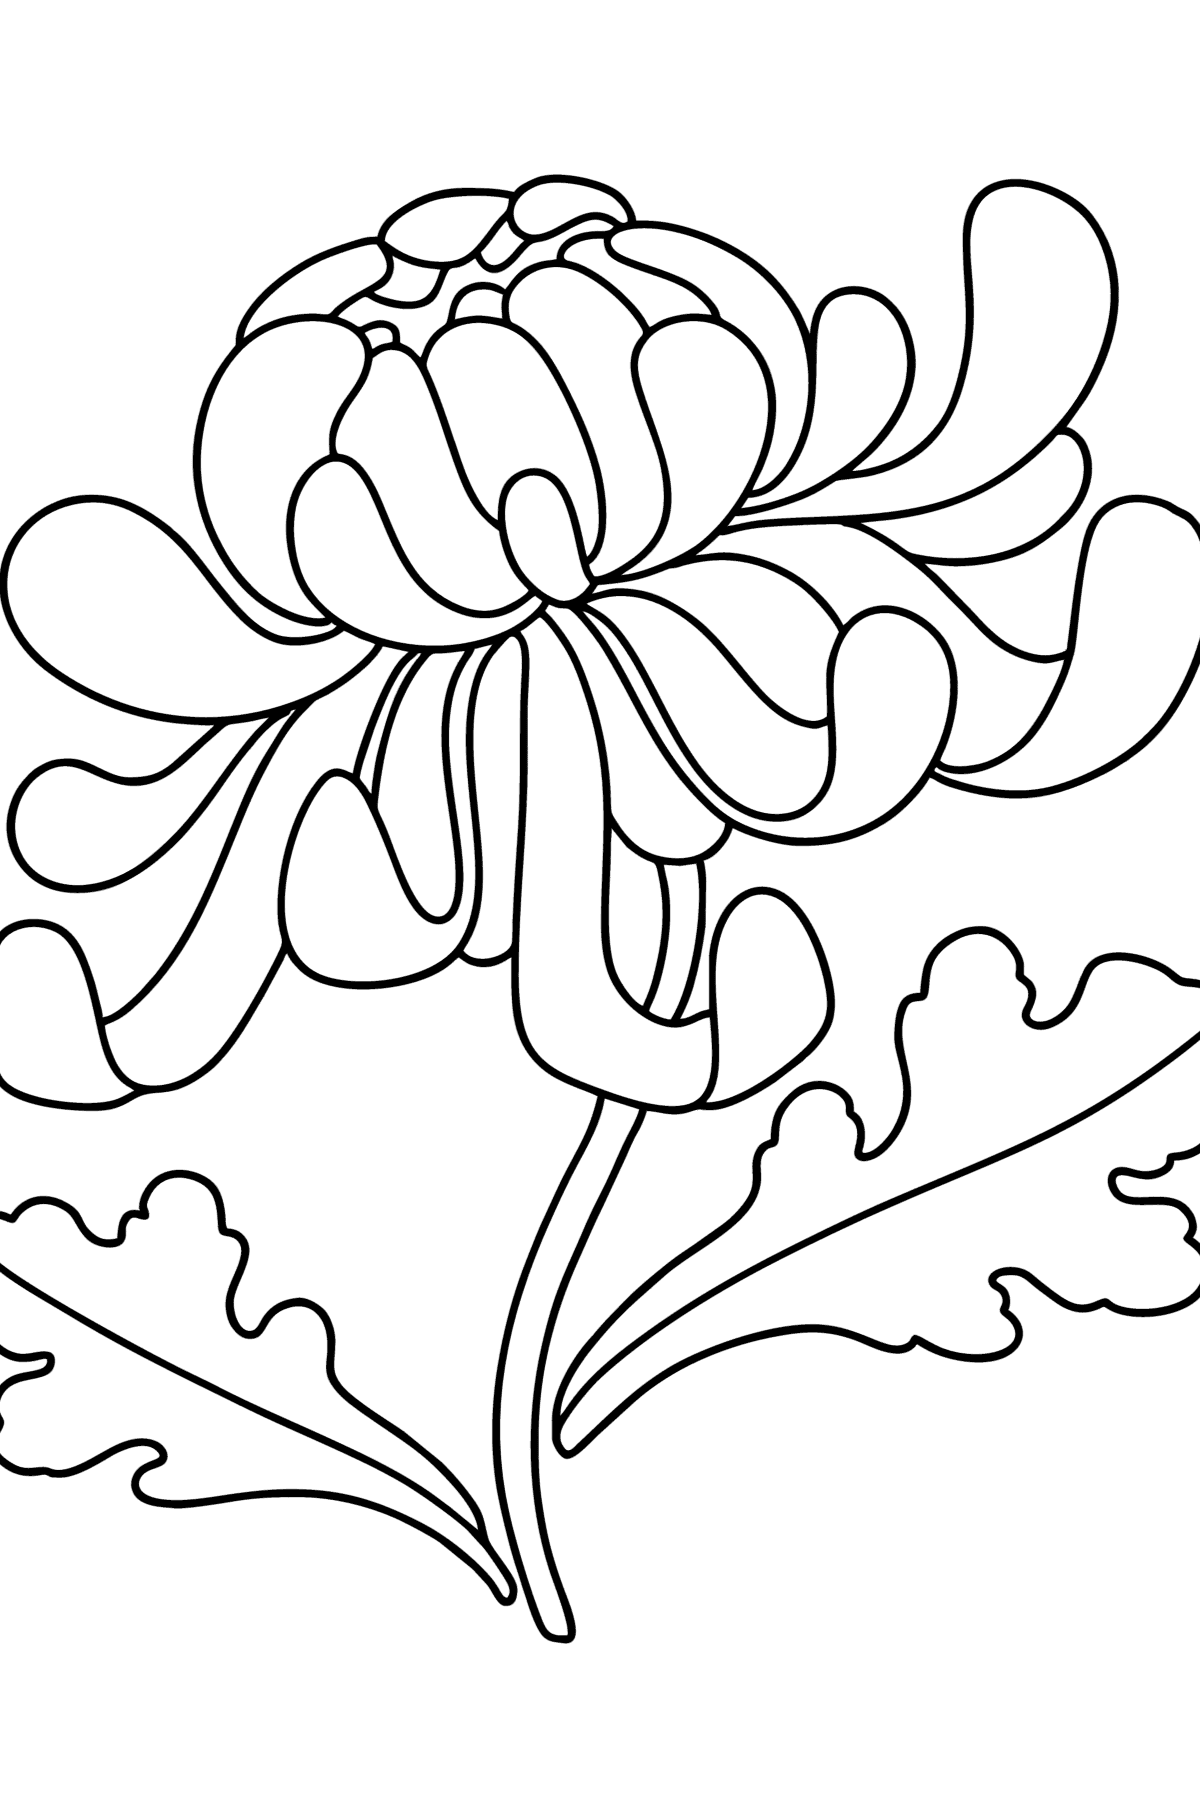 Tegning til fargelegging krysantemum - Tegninger til fargelegging for barn